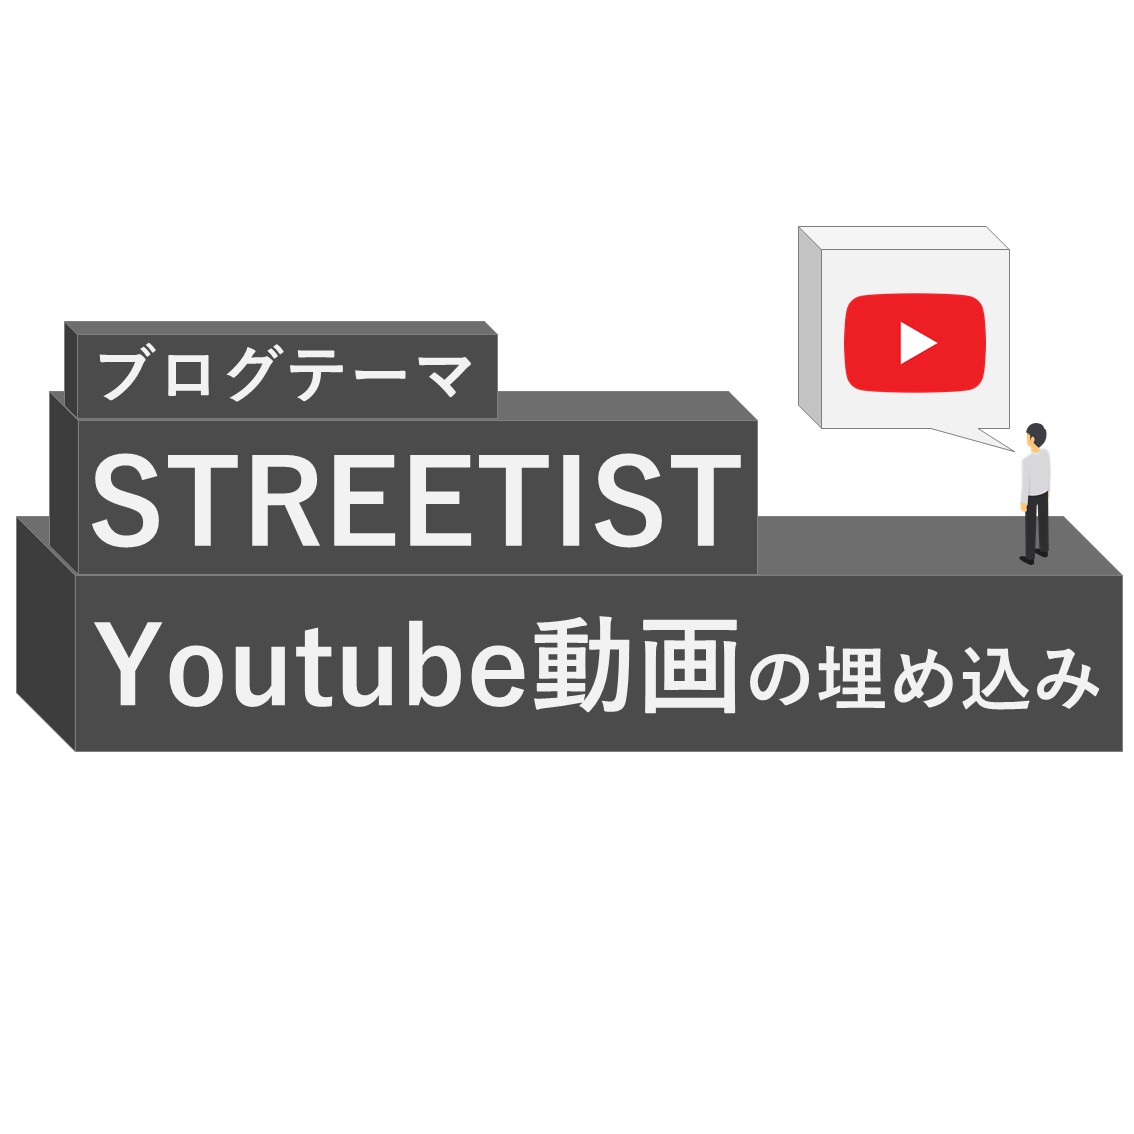 「【初心者のための】STREETIST「Youtube動画」の埋め込みのやり方」のアイキャッチ画像